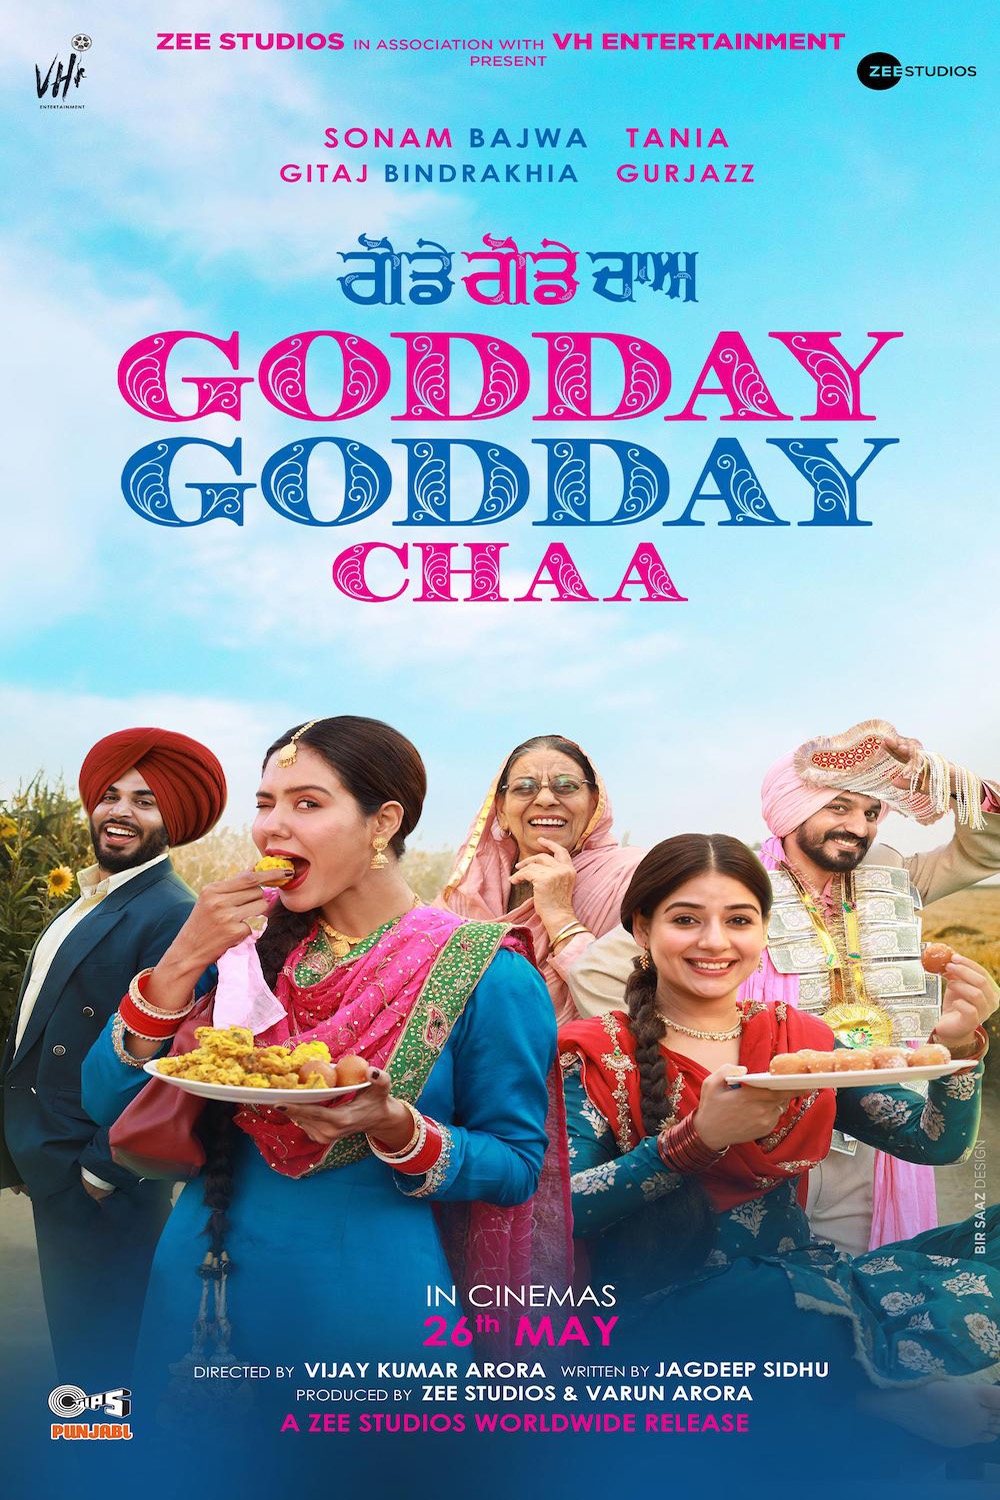 Godday Godday Chaa (Punjabi w/English Subtitles) Poster